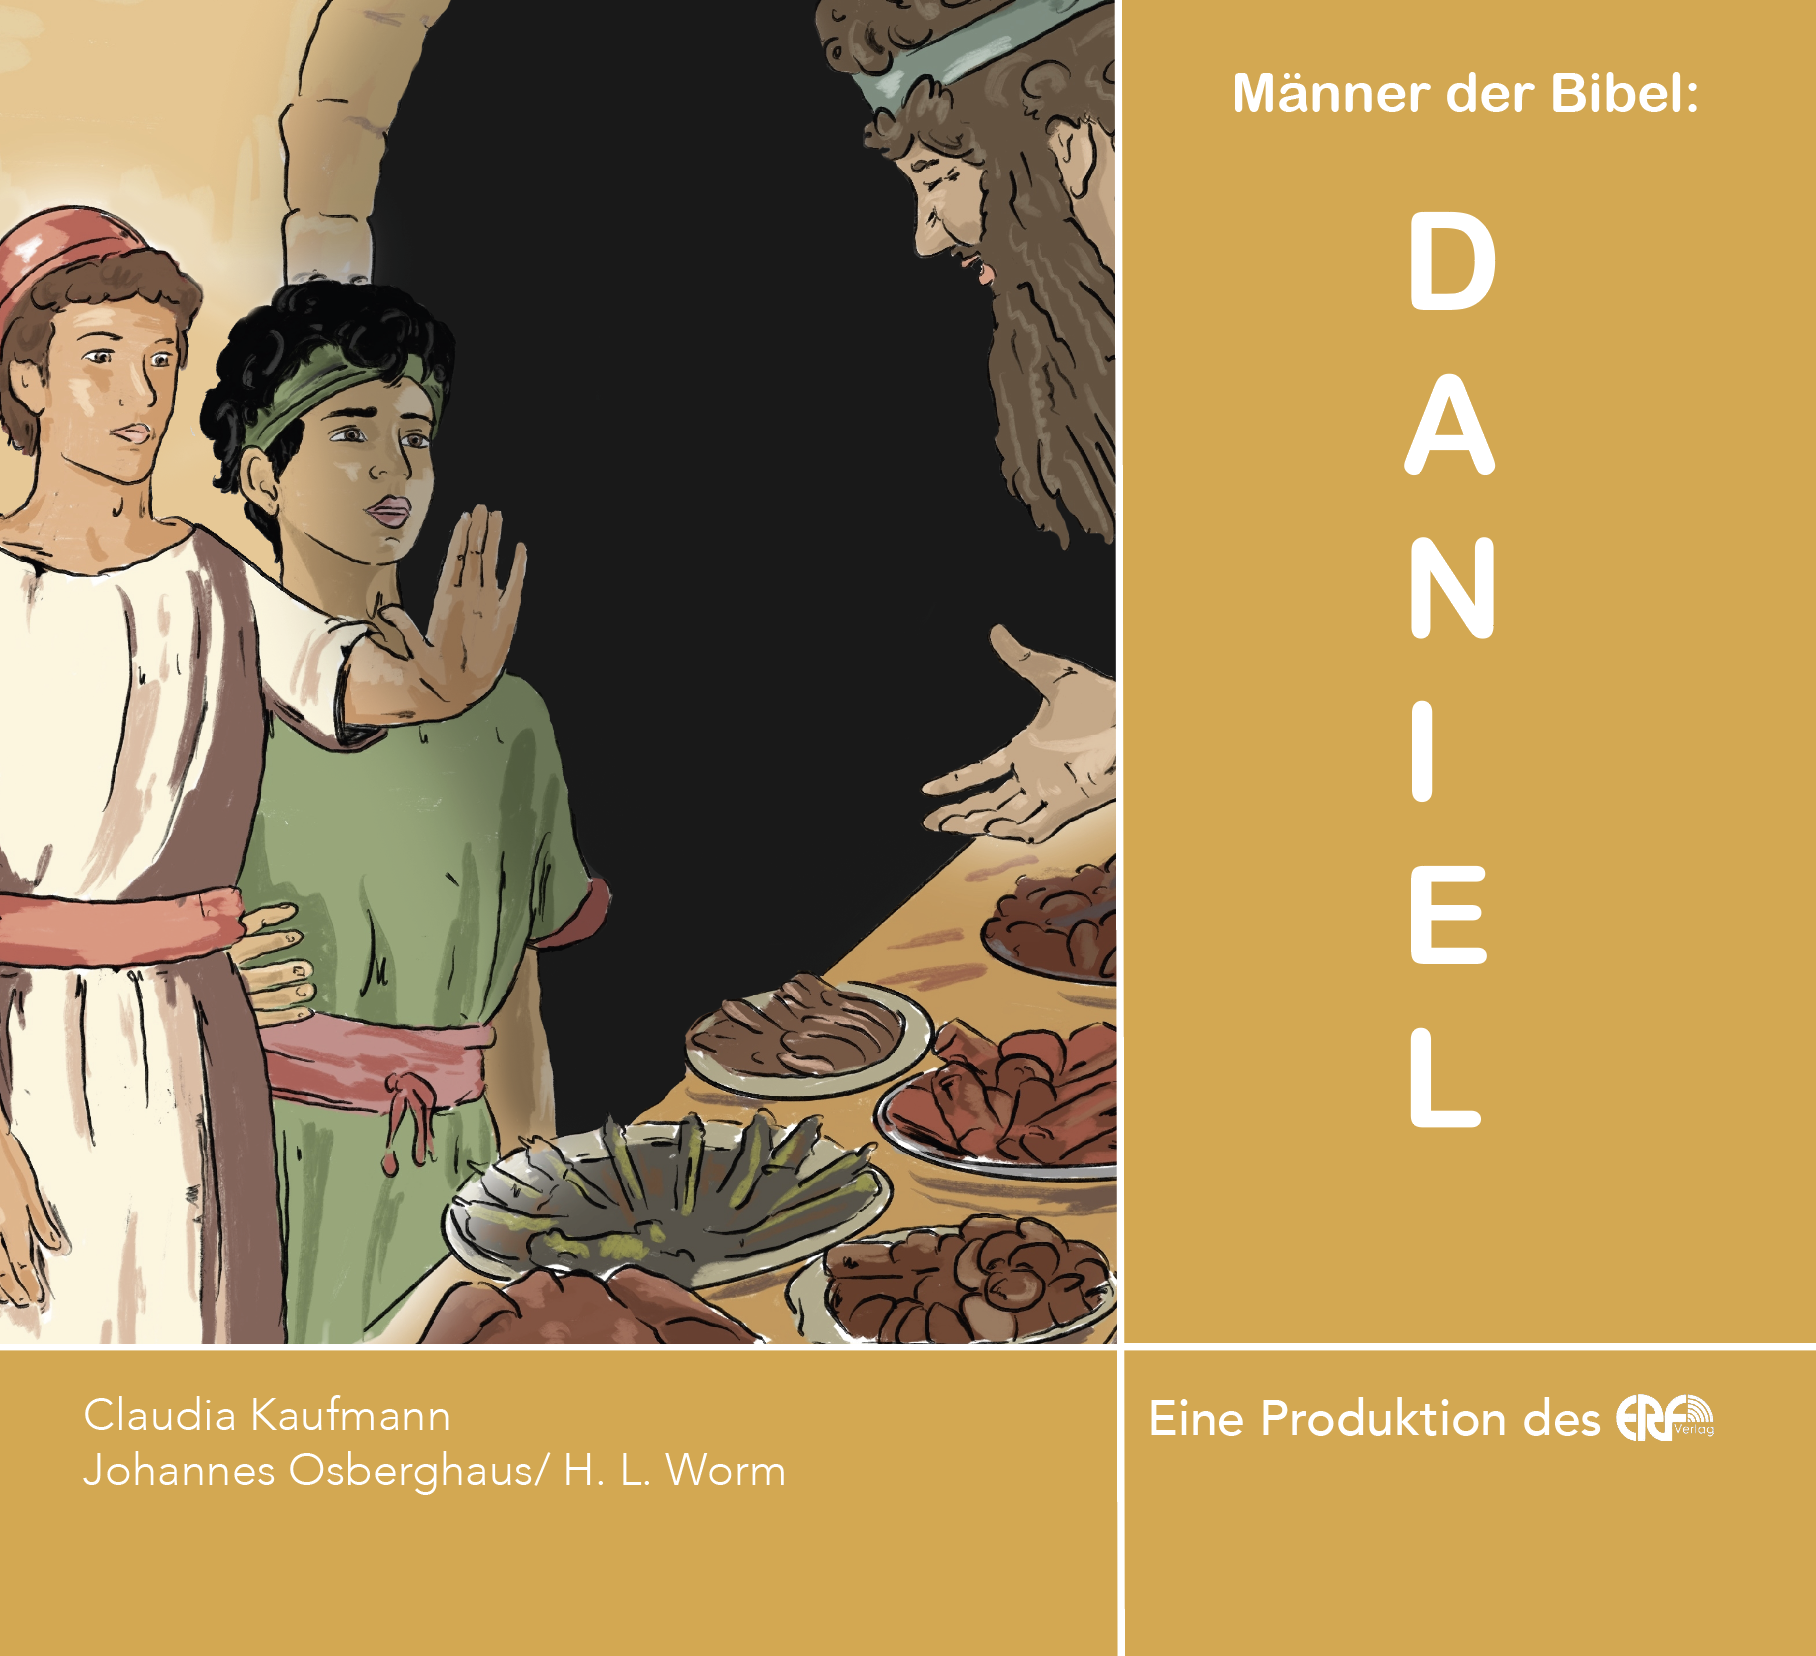 Männer der Bibel: Daniel